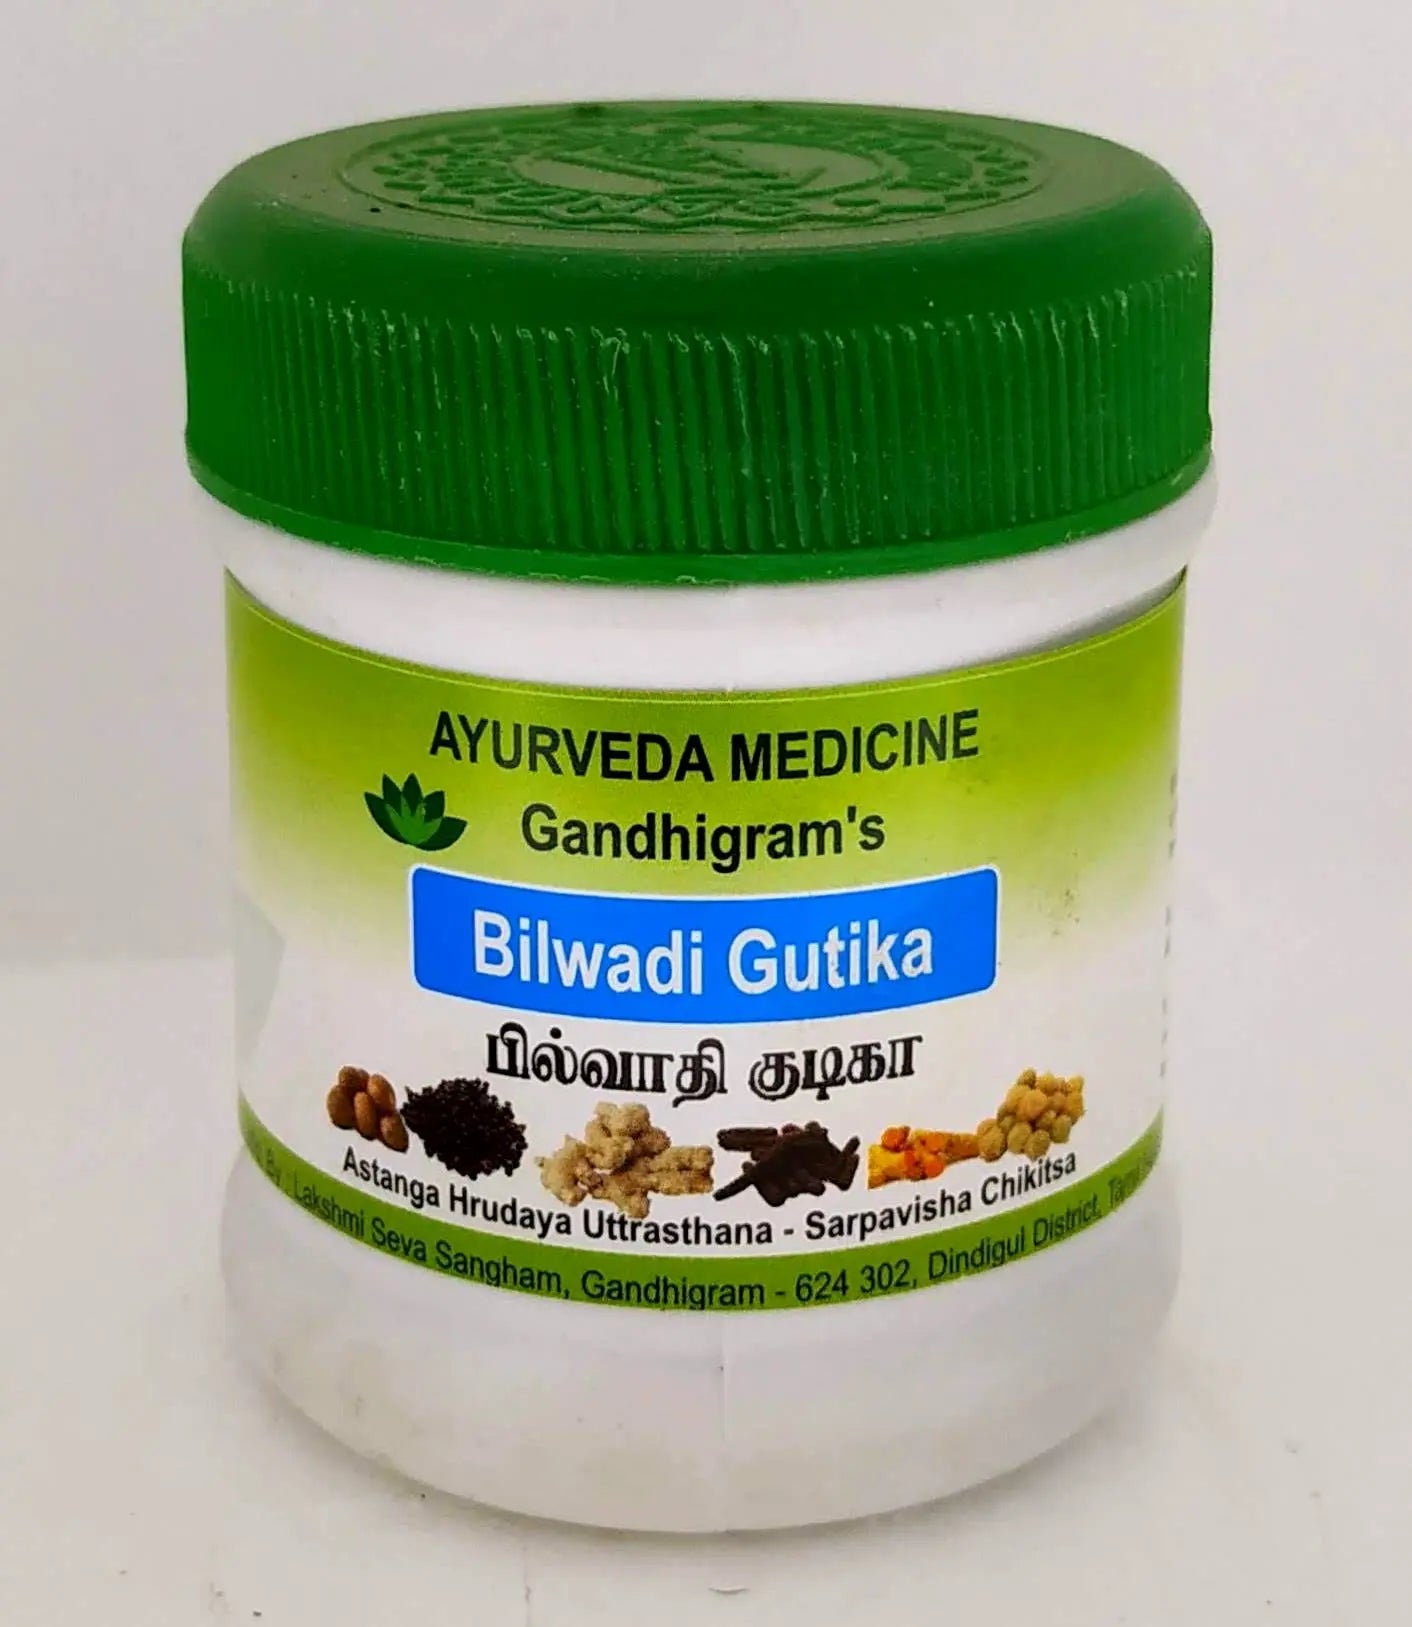 Bilwadi Gutika Tablets - 50gm Lakshmi Seva Sangham